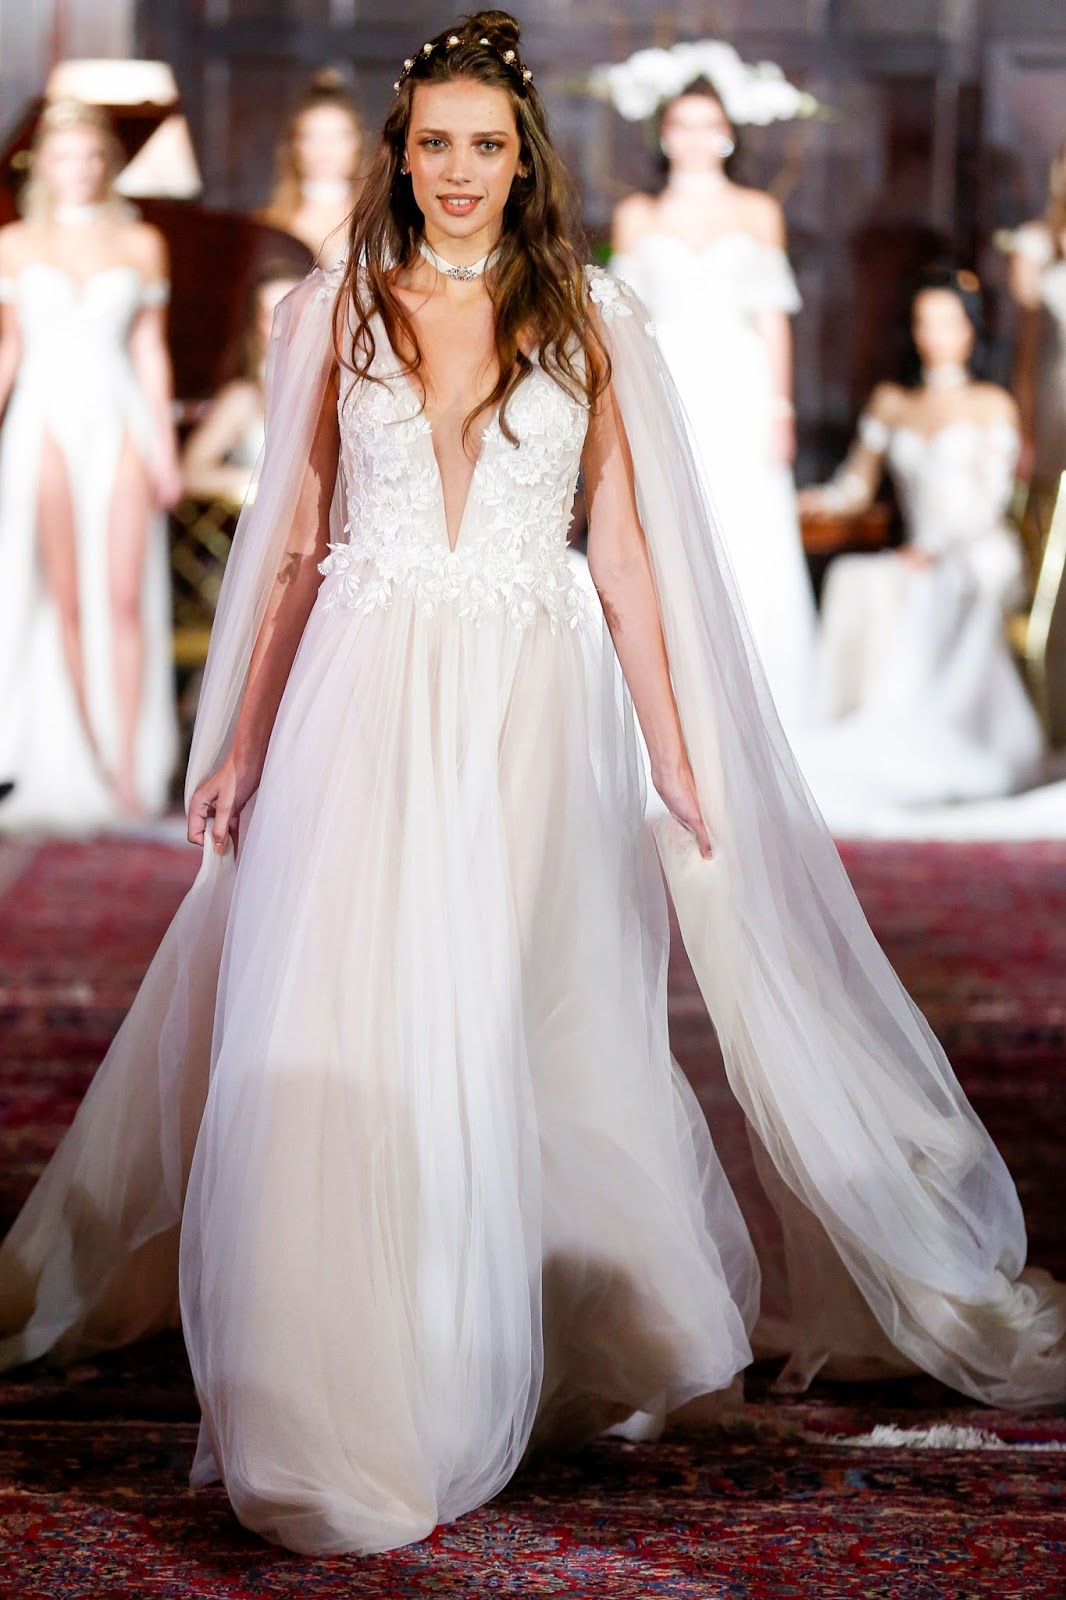 The Glamorous Bride: VINO